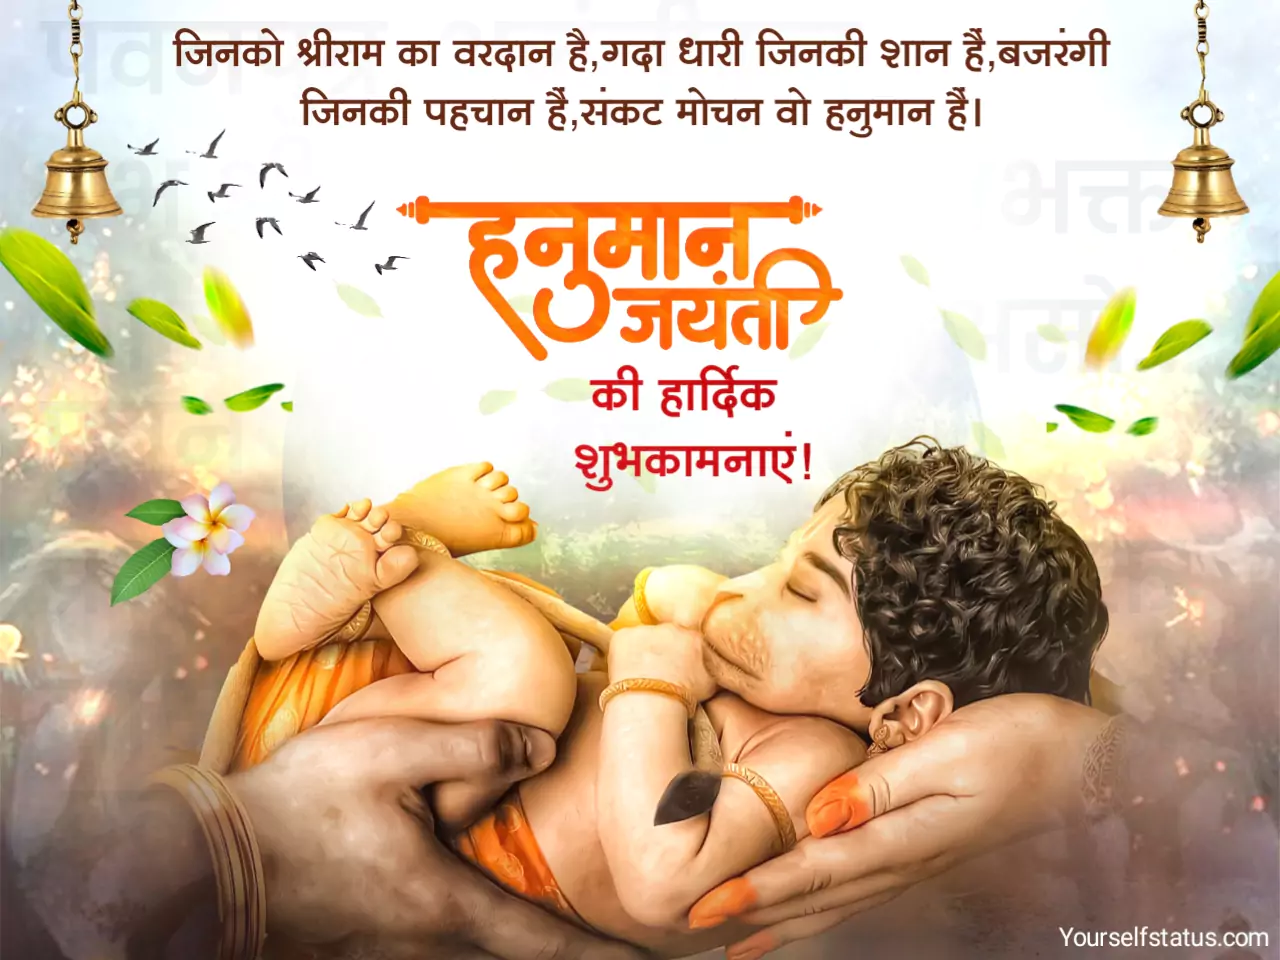 Hanuman jayanti wishes in hindi